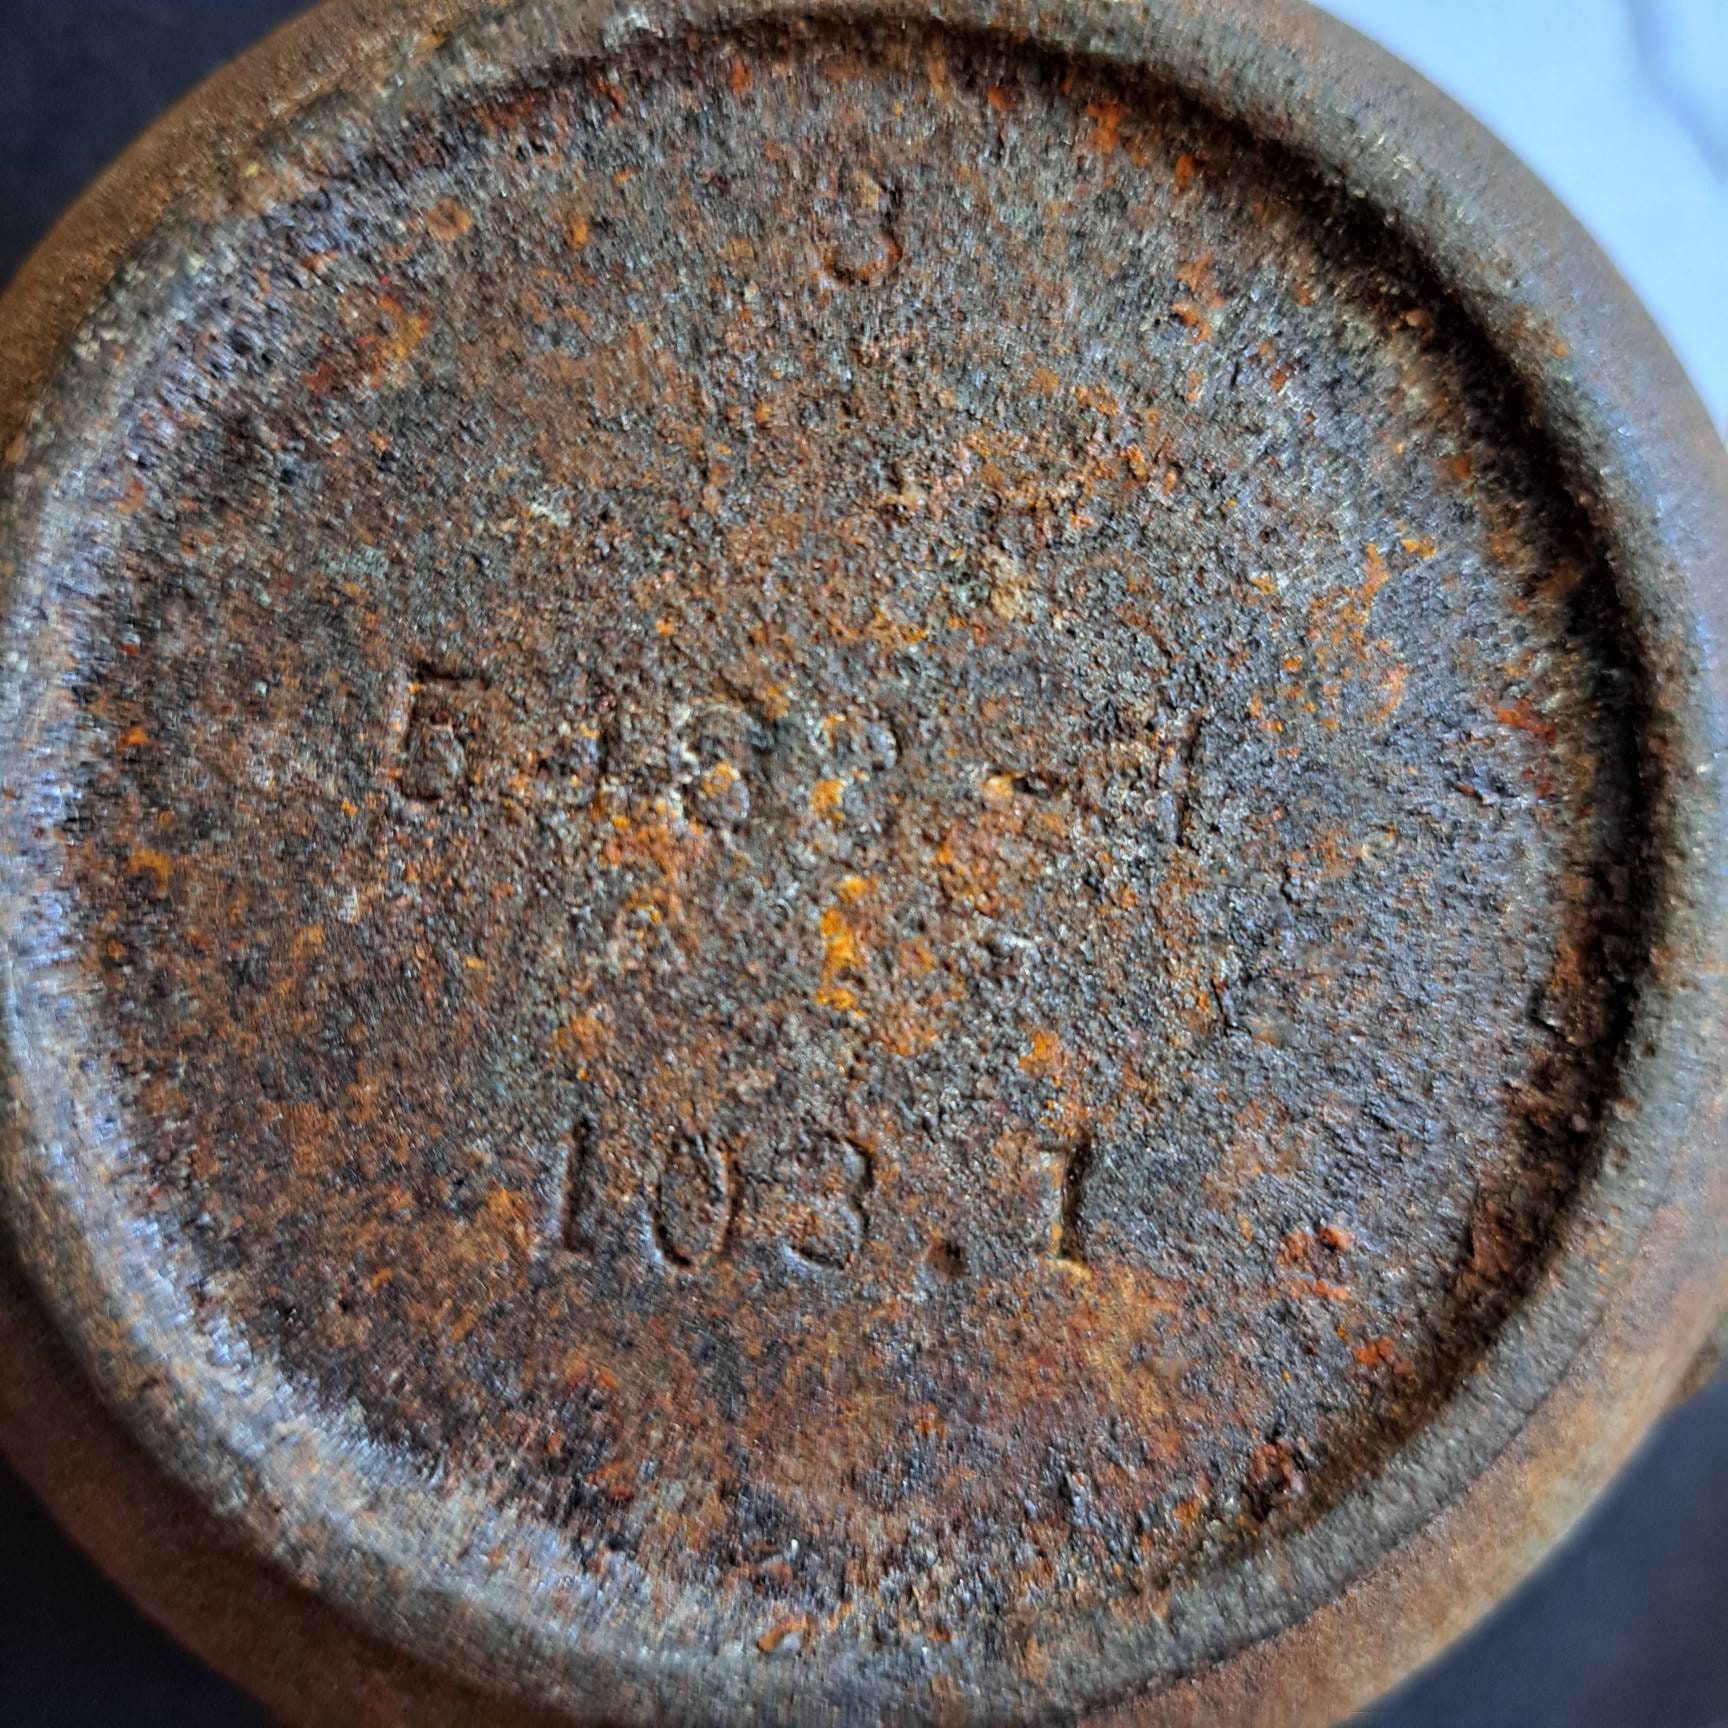 Cast iron melting crucible with handle, marked 5, melting pot pot